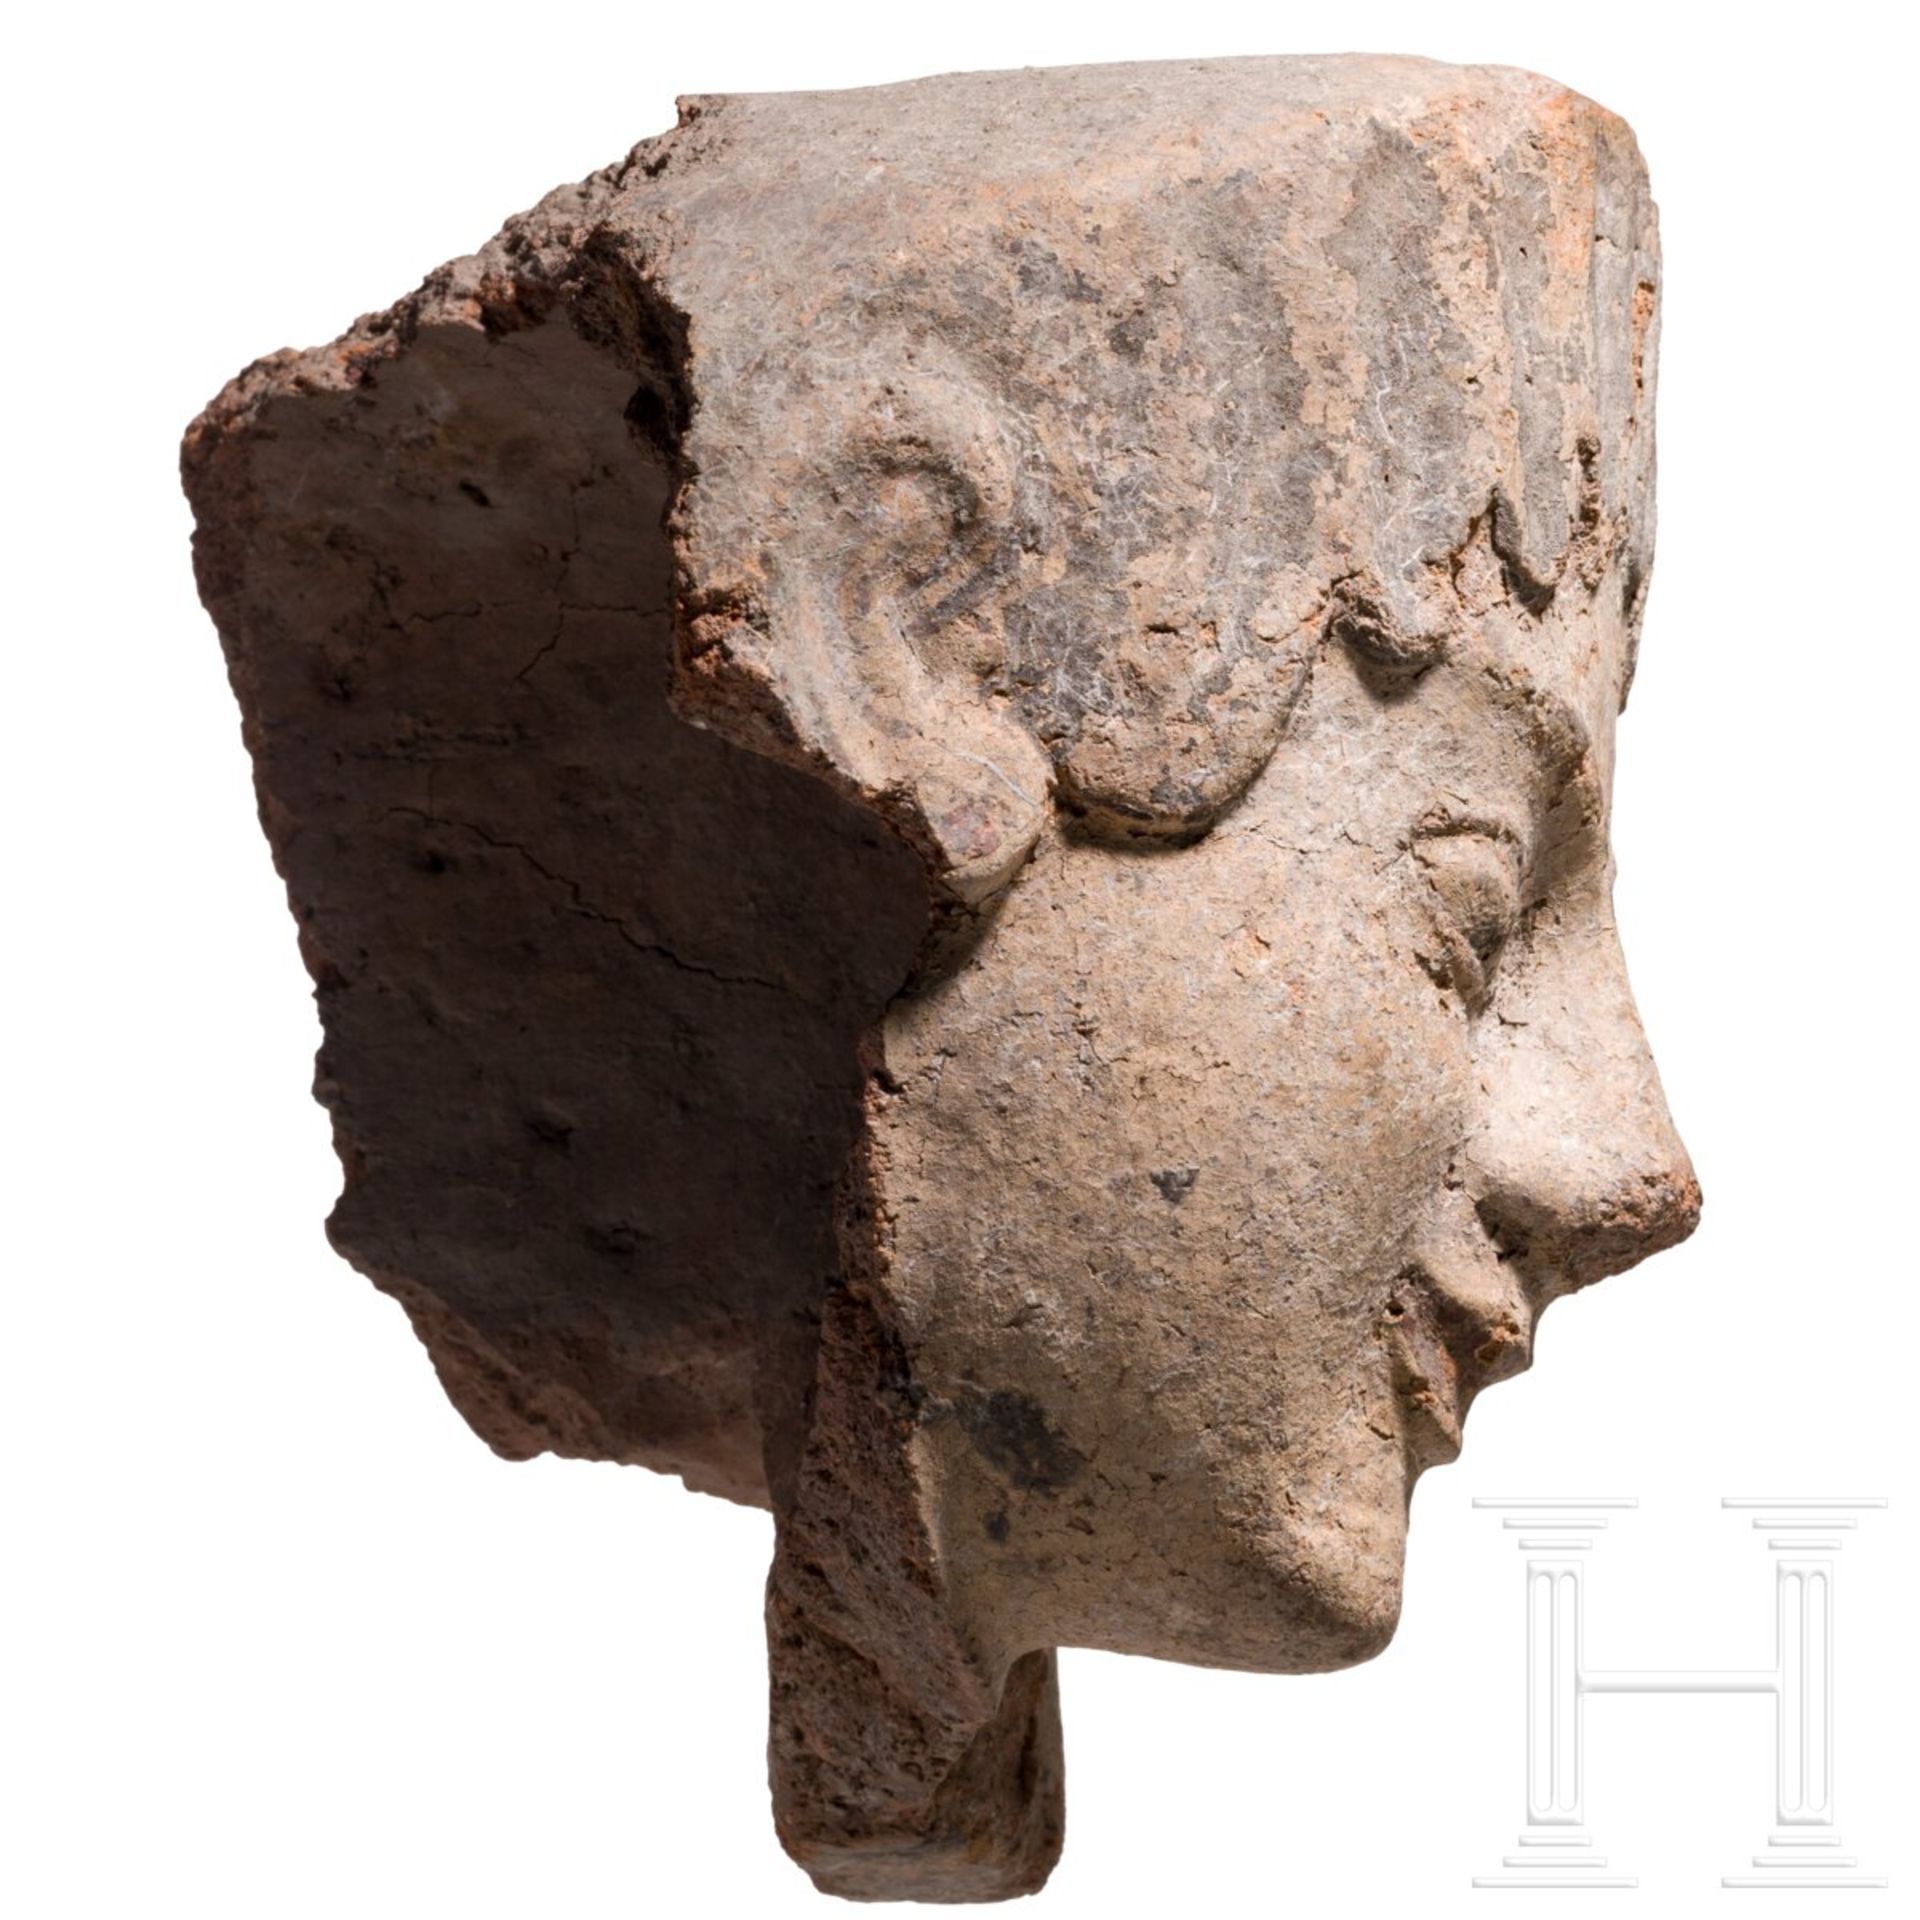 Antefix aus Ton mit Bemalungsresten, etruskisch, spätes 6. Jhdt. v. Chr. - Bild 3 aus 5